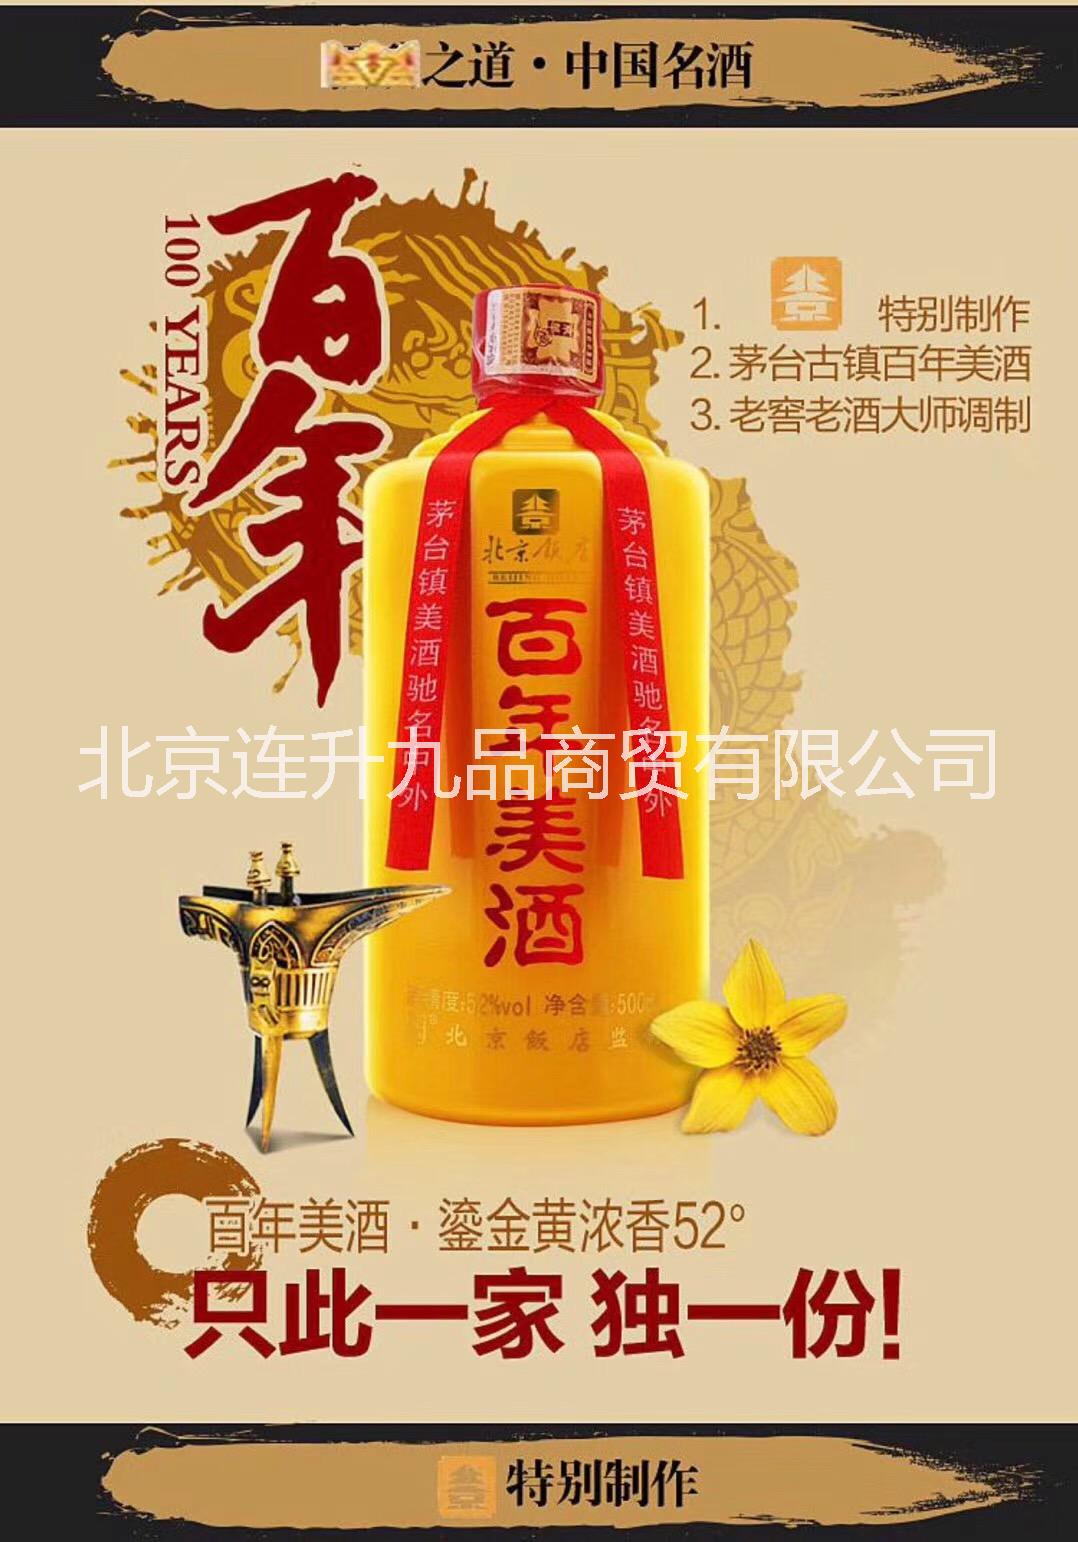 北京百年美酒北京饭店百年酒52度百年美酒百年美酒鎏金瓶北京饭店百年美酒价格